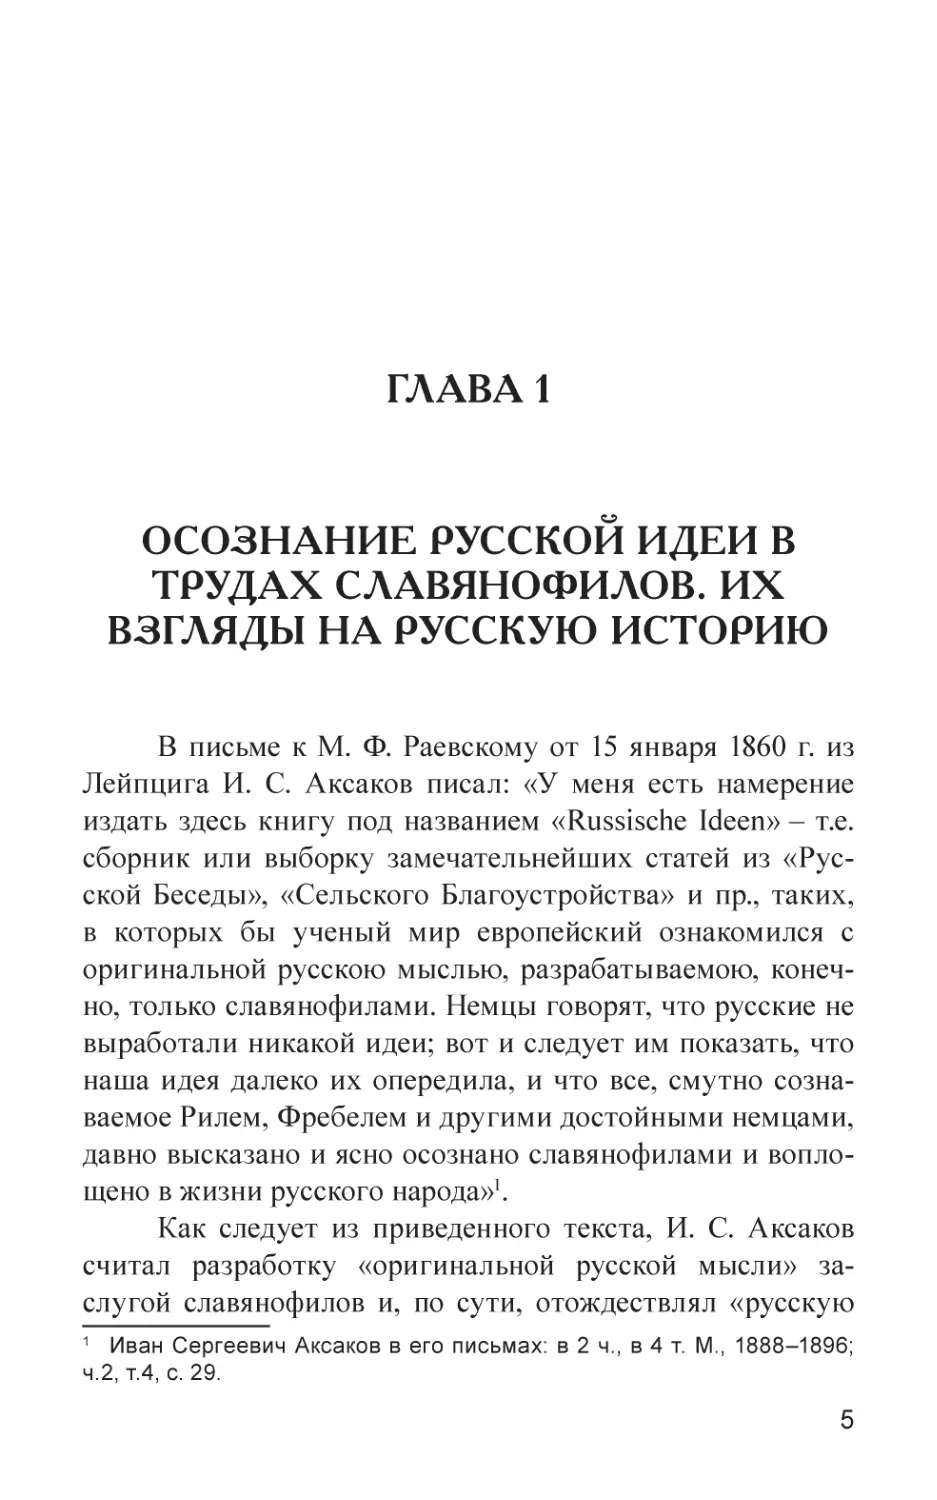 Глава 1
Осознание русской идеи в трудах славянофилов. Их взгляды на русскую историю